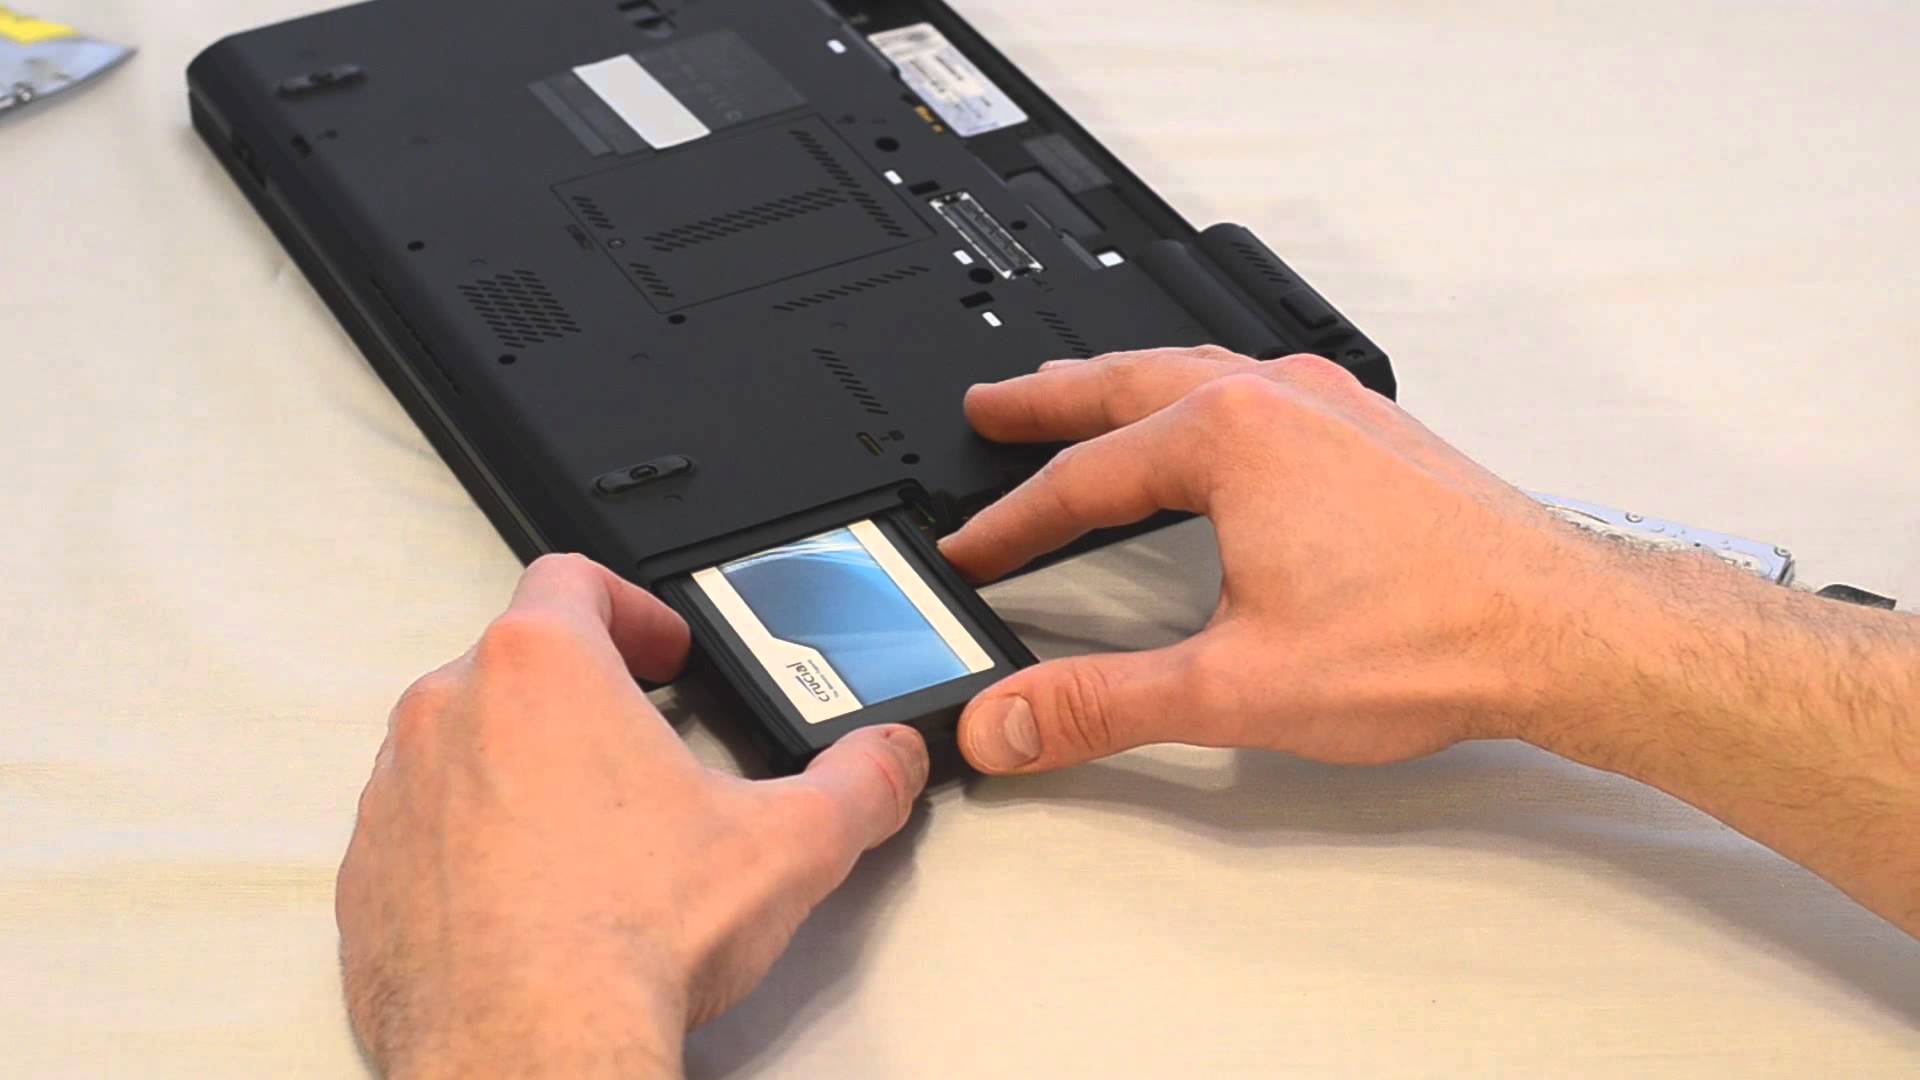 Nâng cấp ổ cứng SSD cho Macbook là lựa chọn đúng đắn khi máy chậm